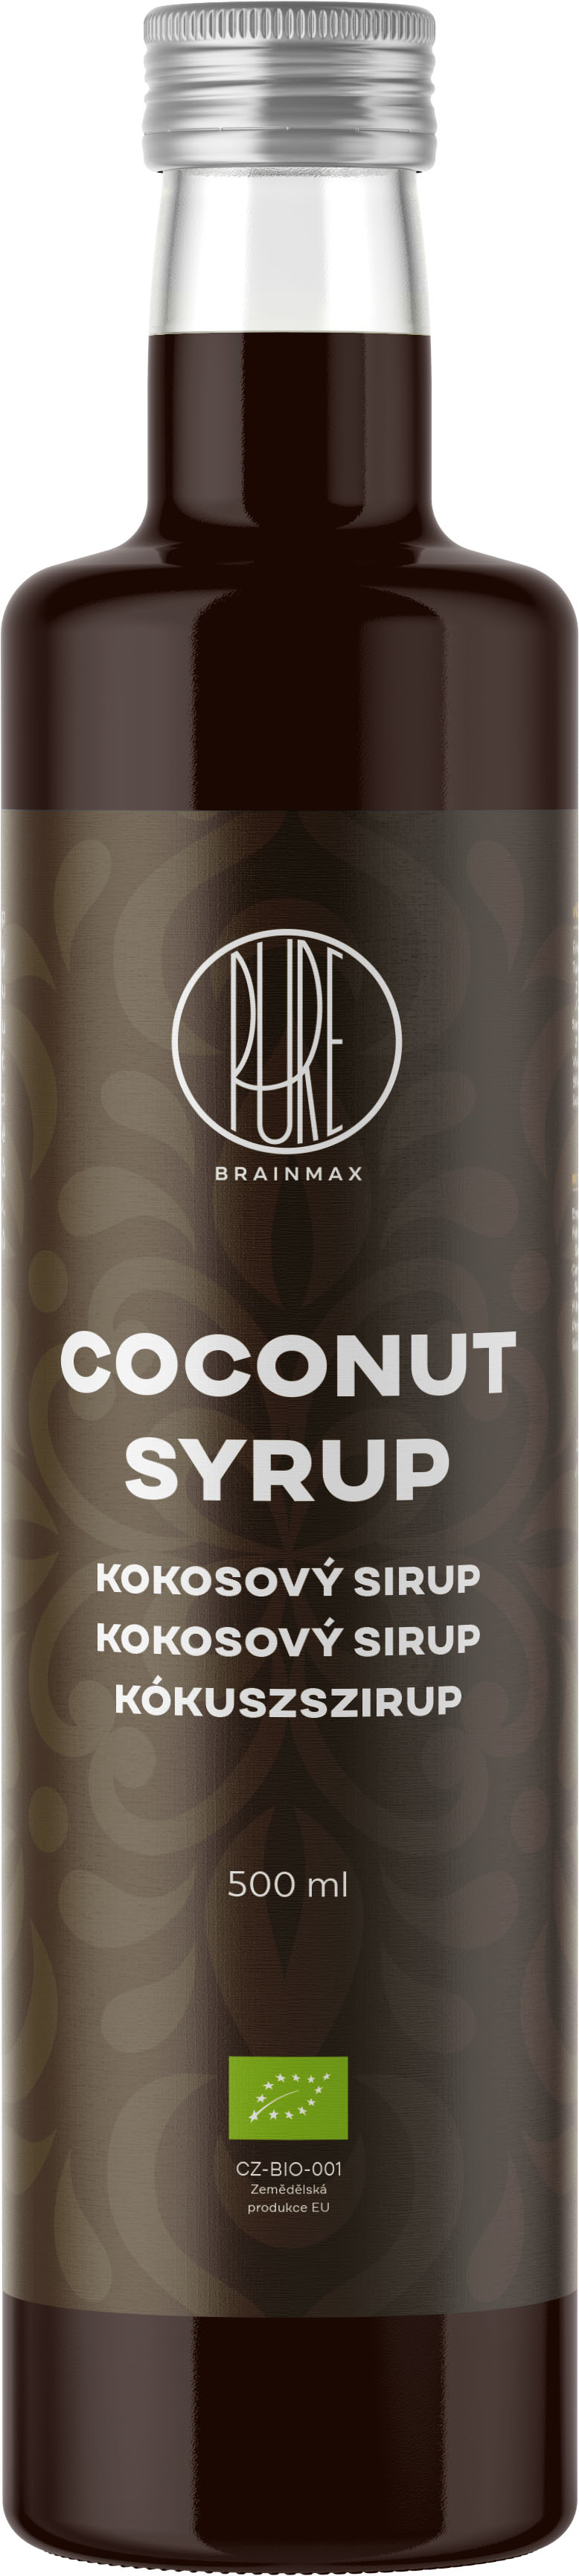 Levně BrainMax Pure Coconut Syrup, Kokosový sirup světlý, BIO, 500 ml *CZ-BIO-001 certifikát